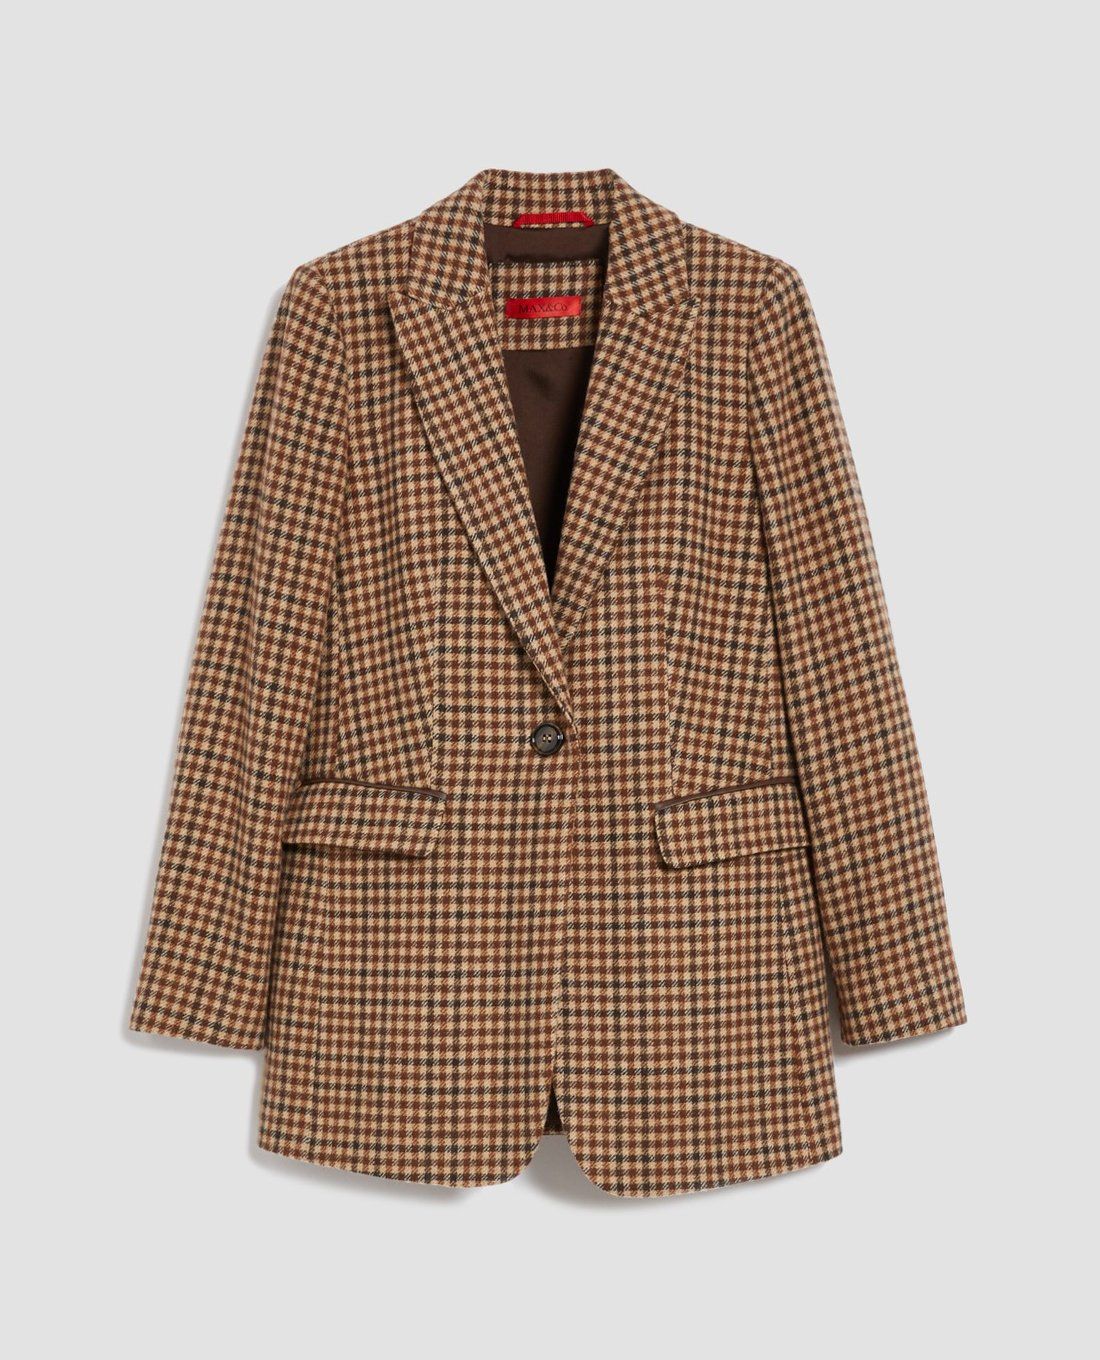 Mua Online áo khoác vest blazer nữ kẻ caro chất đẹp | Khuyến mãi giá rẻ  766.600 đ